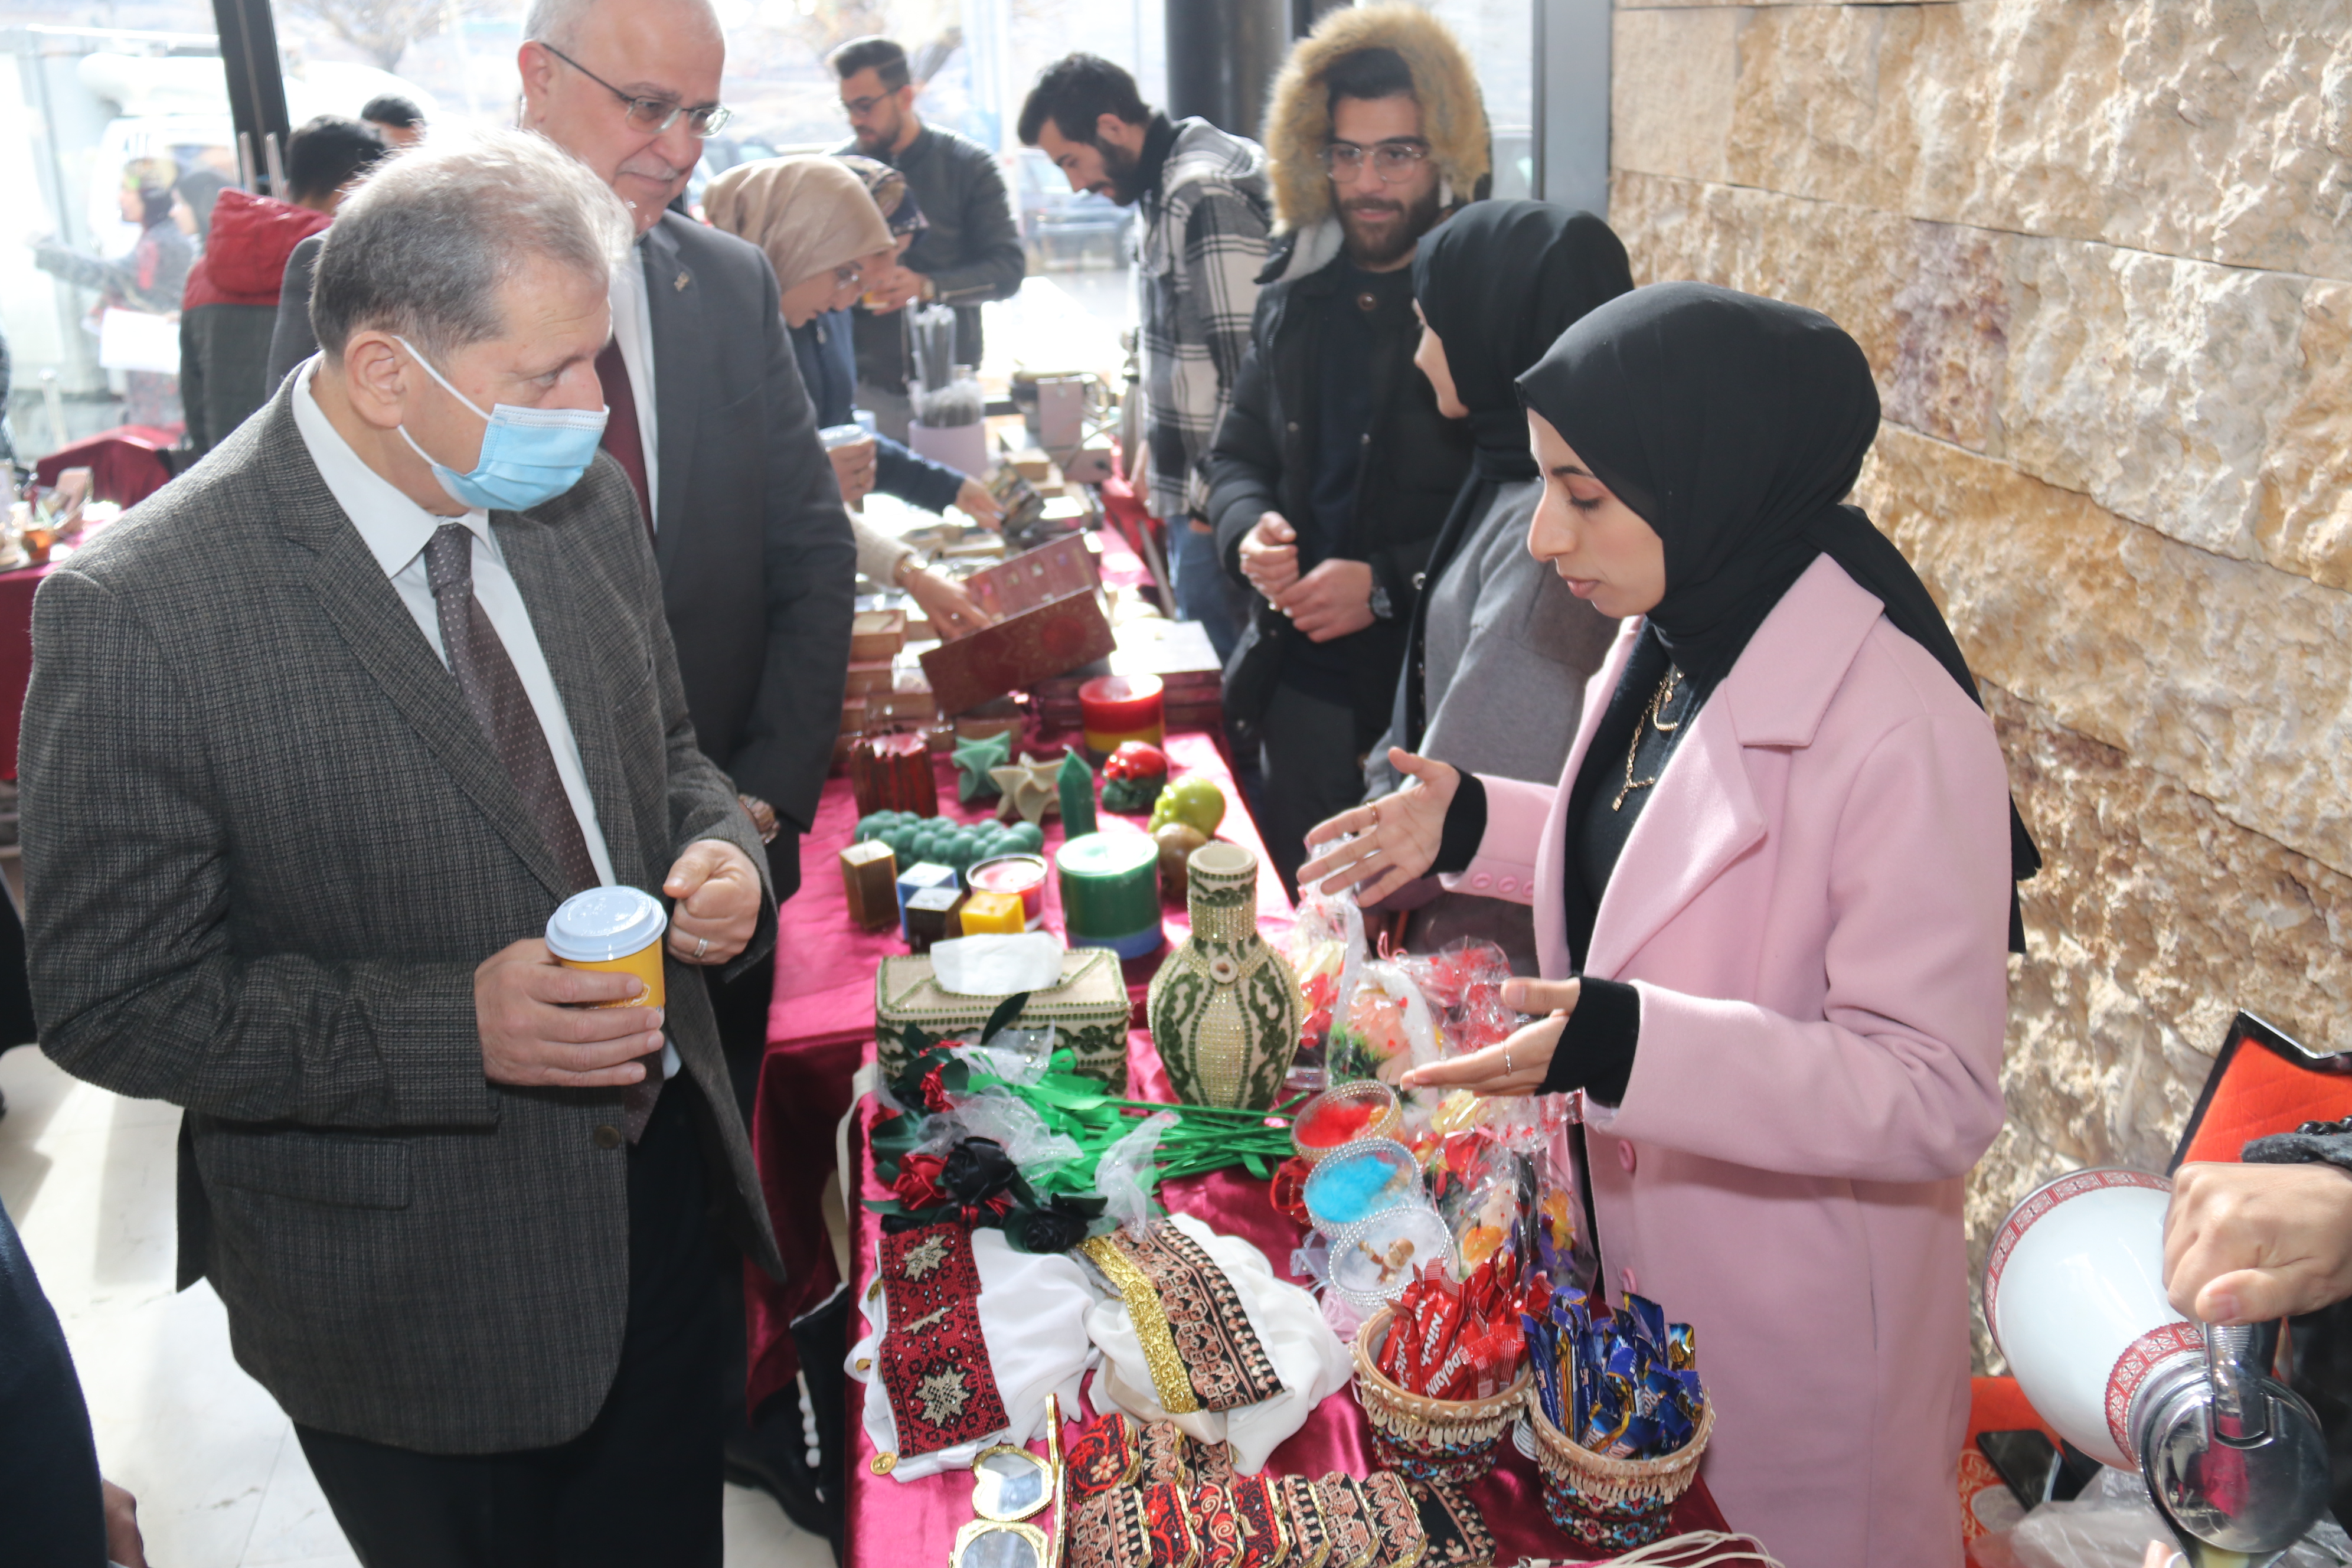 بازار أصحاب المشاريع الصغيرة لطلبة جامعة عمّان العربية2